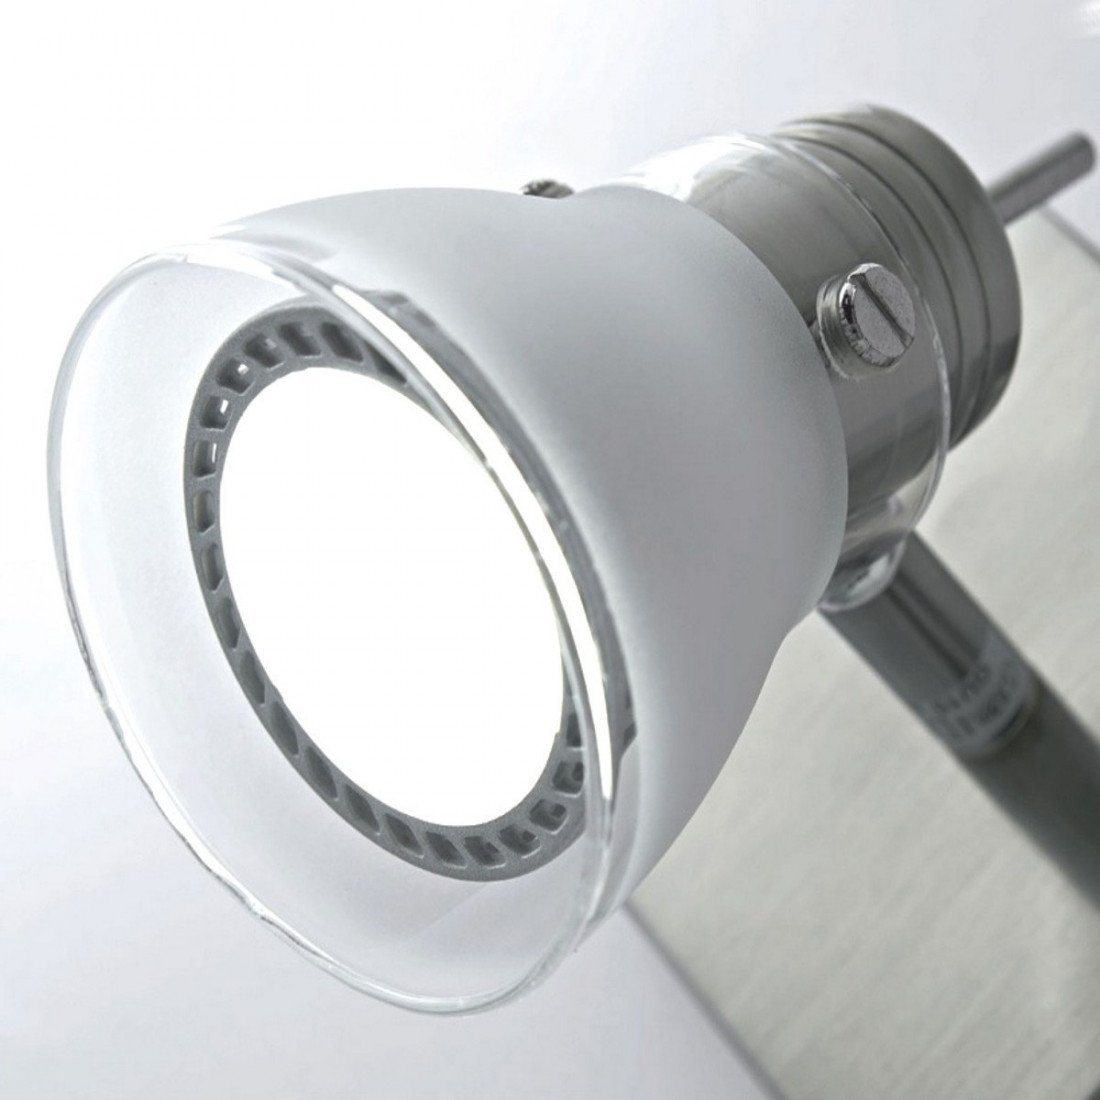 Binario IL-APOLLO GU10 LED 7W 2 luci metallo nichel spazzolato vetro moderno spot